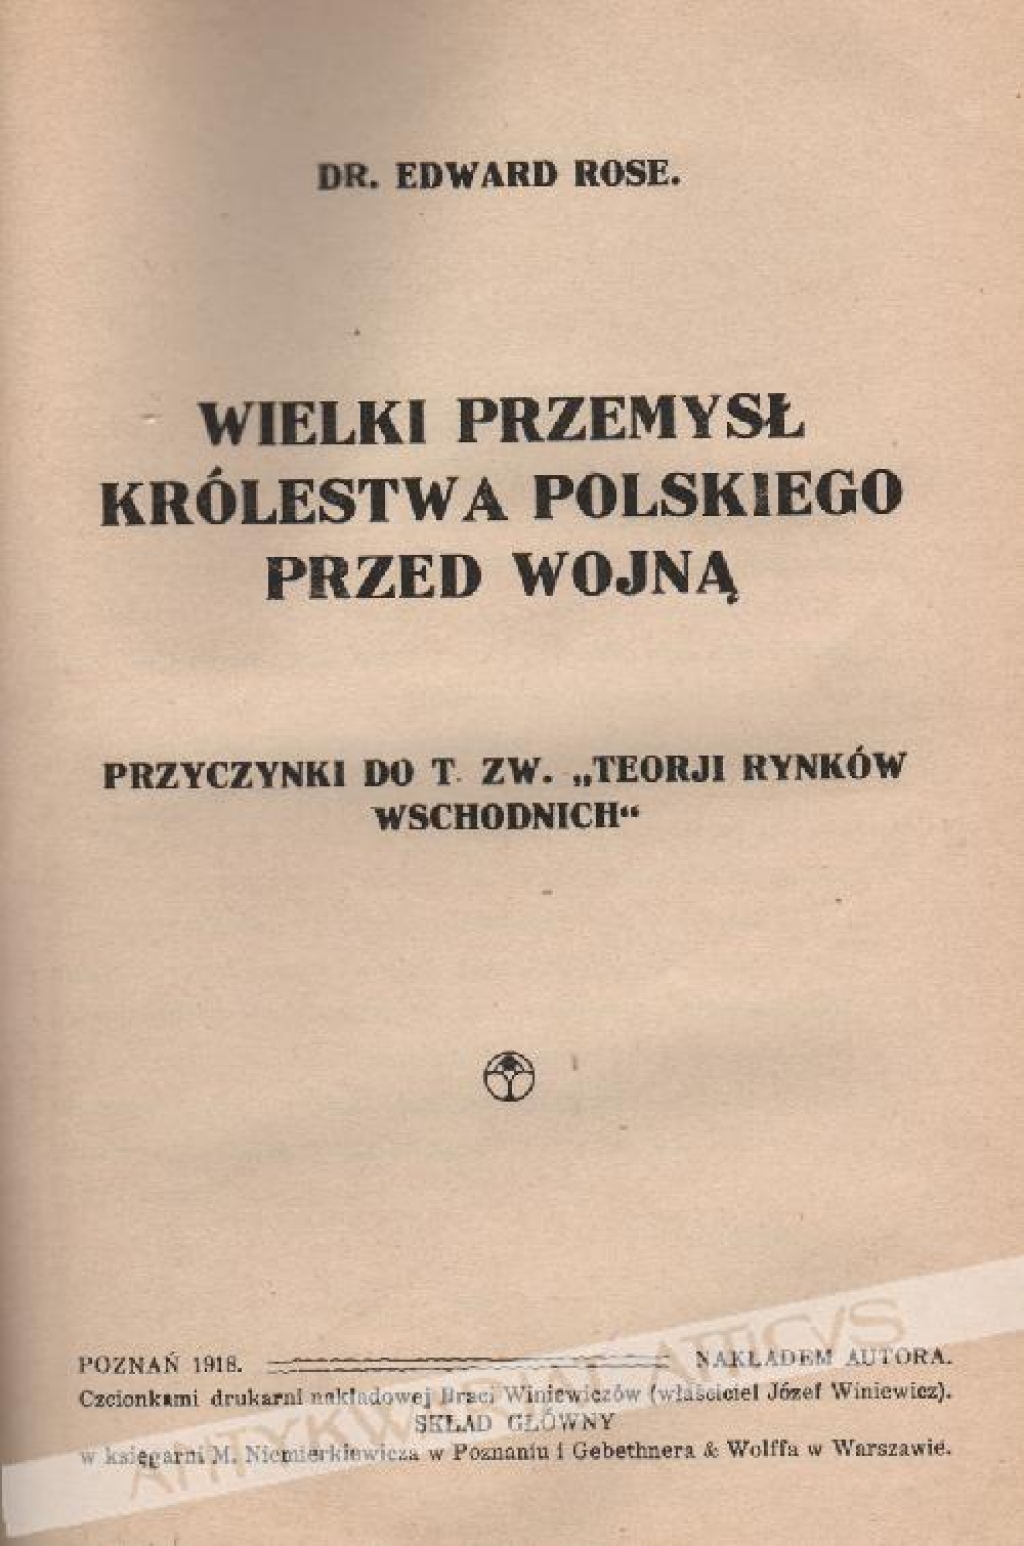 Wielki przemysł Królestwa Polskiego przed wojną. Przyczynki do tzw. "Teorji rynków wschodnich"